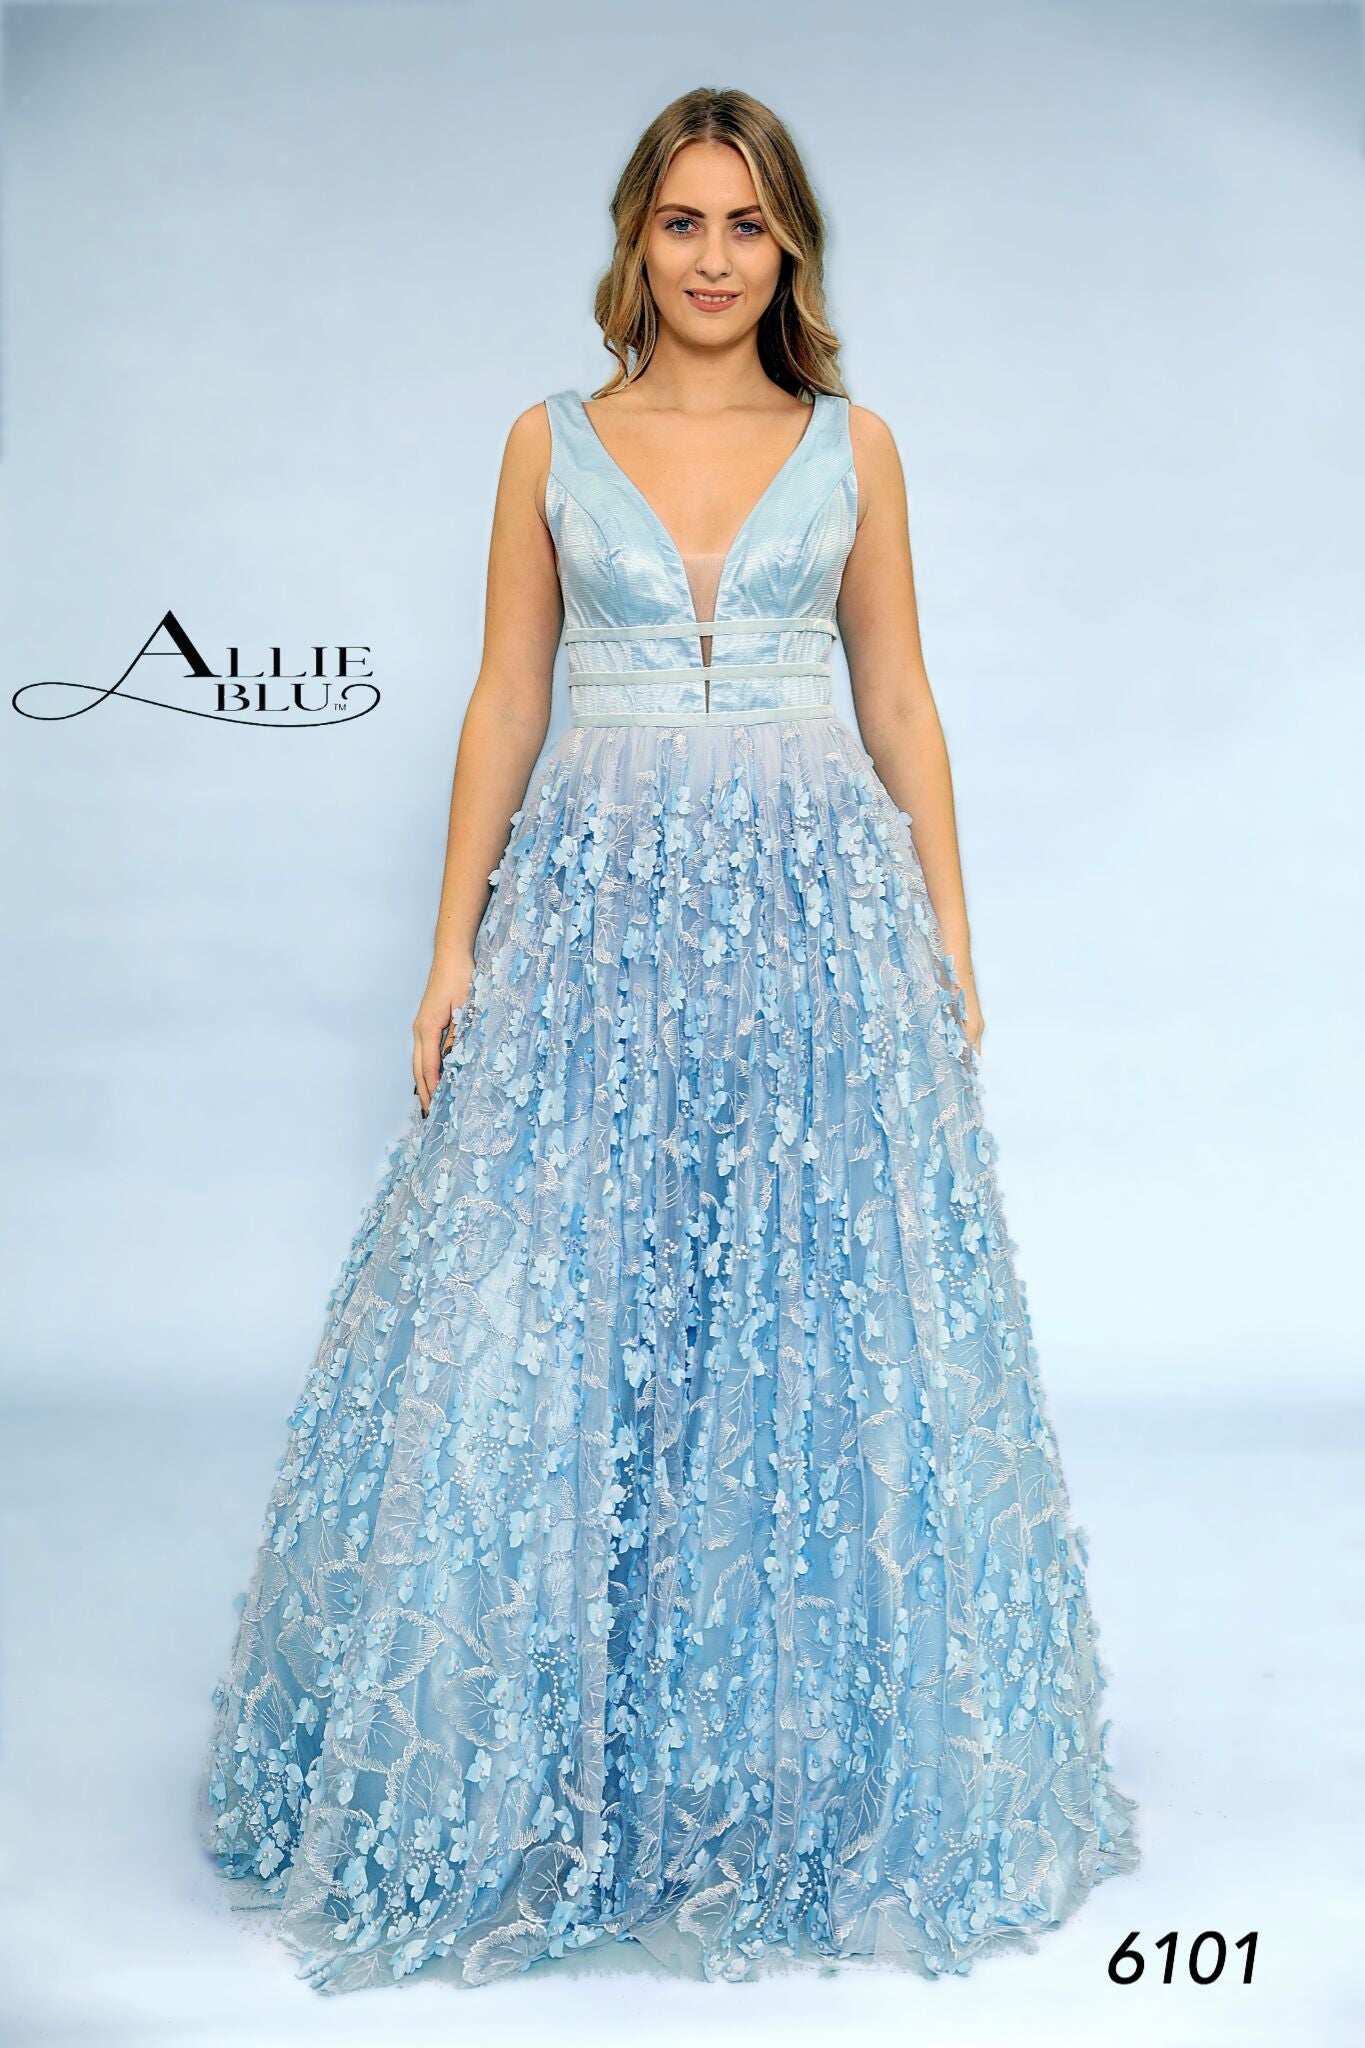 Allie Blu 6101 size 10 Peach floral applique prom dress Ballgown lace